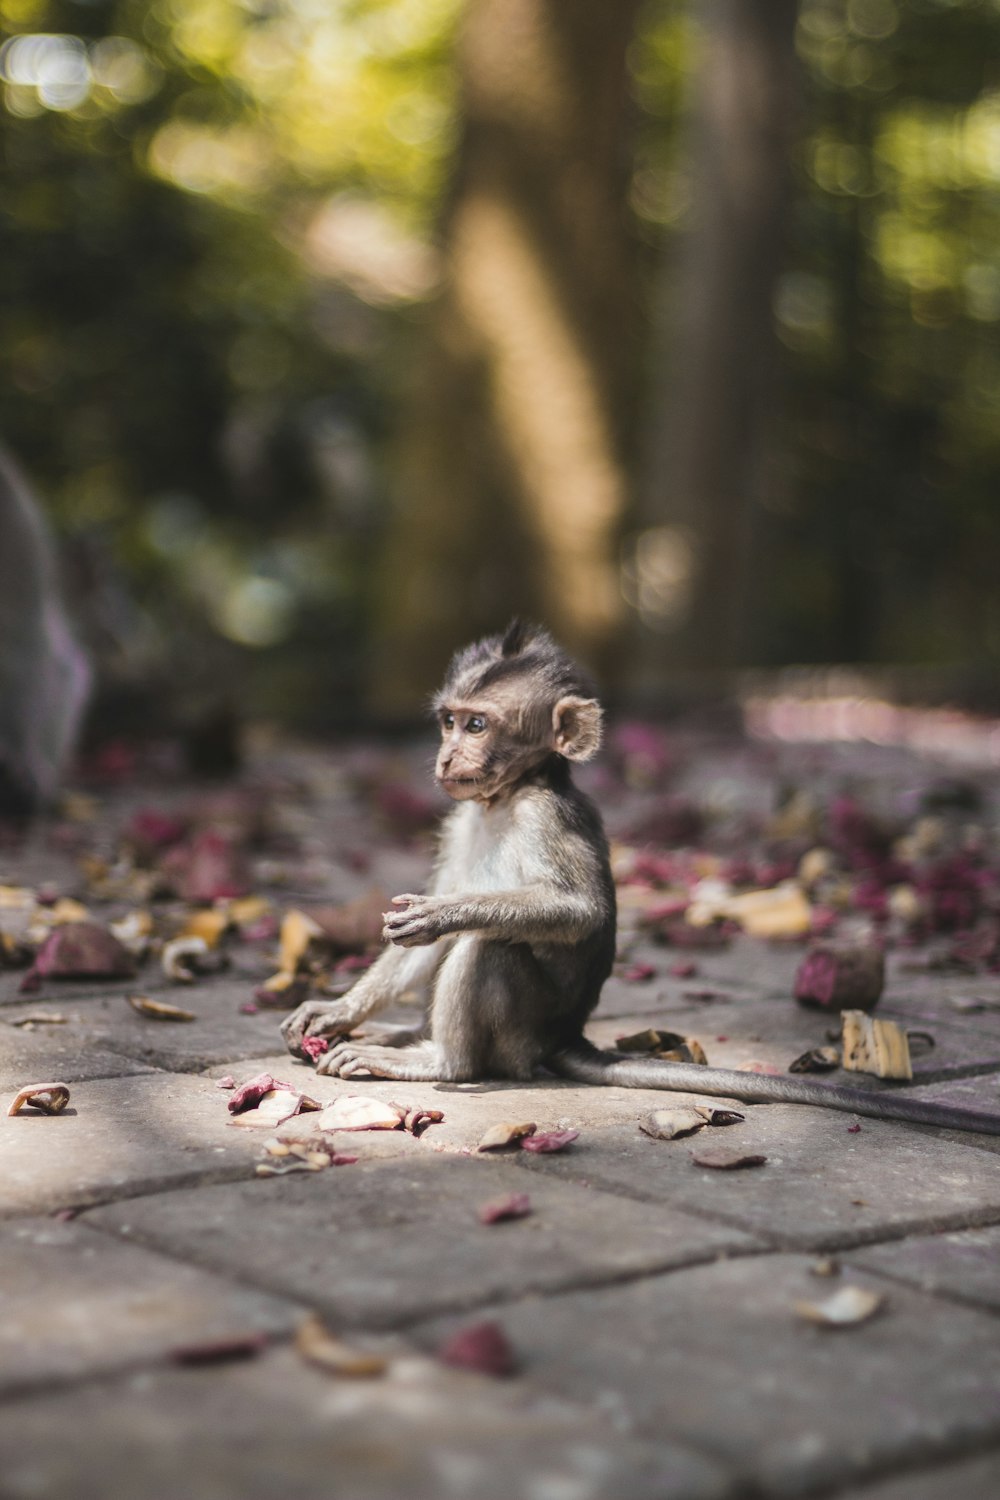 レンガの舗装に座っている眉猿のセレクティブフォーカス写真